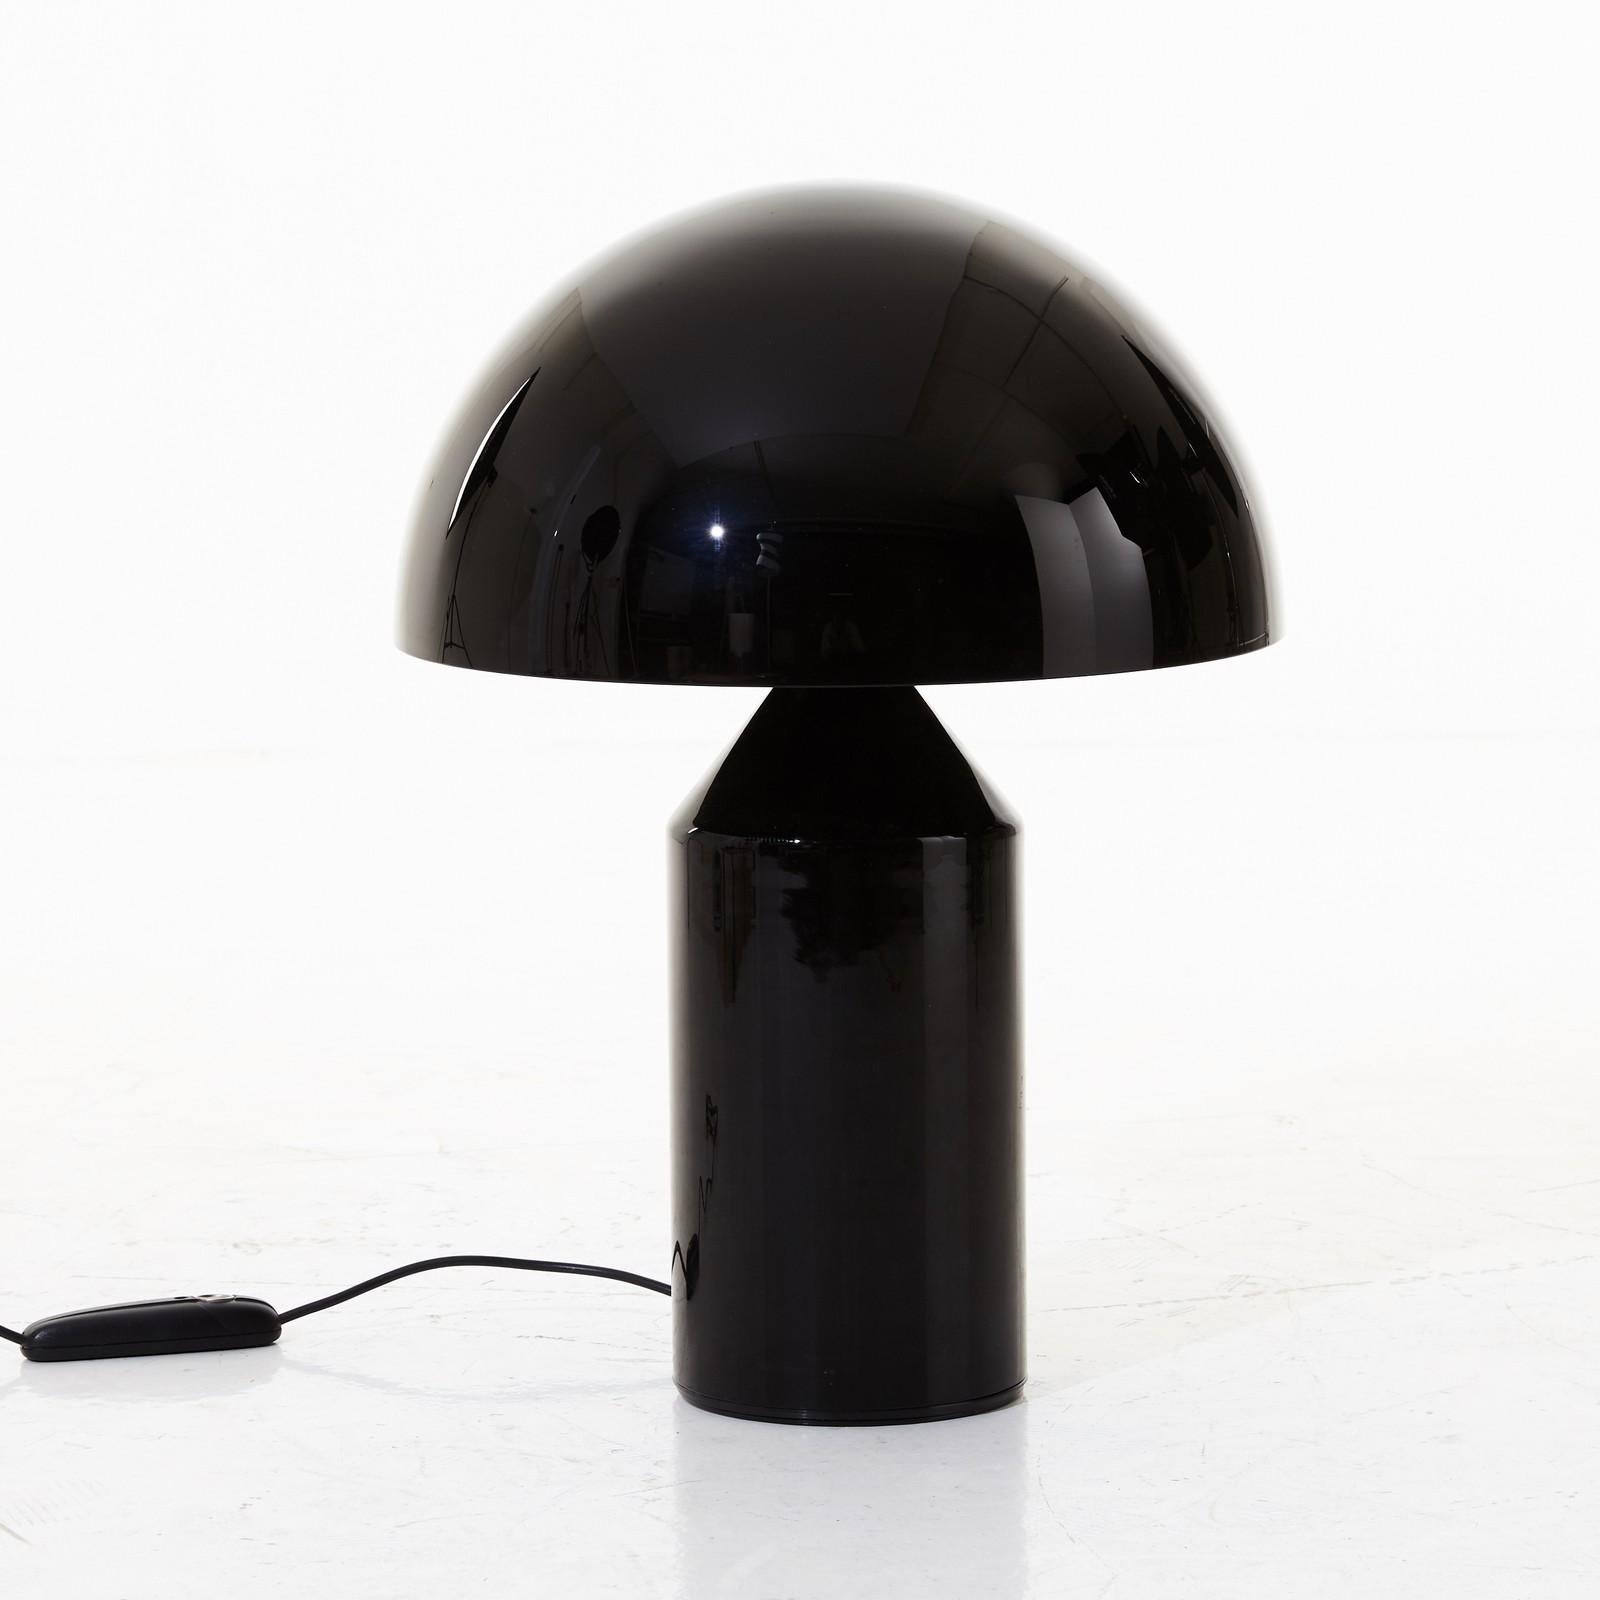 La lampe de table Atollo (1977) se distingue par sa construction géométrique minimale. Cette lampe, imitée dans le monde entier et pourtant inimitable, a remporté de nombreux prix. Elle est également exposée en permanence dans de nombreux musées du